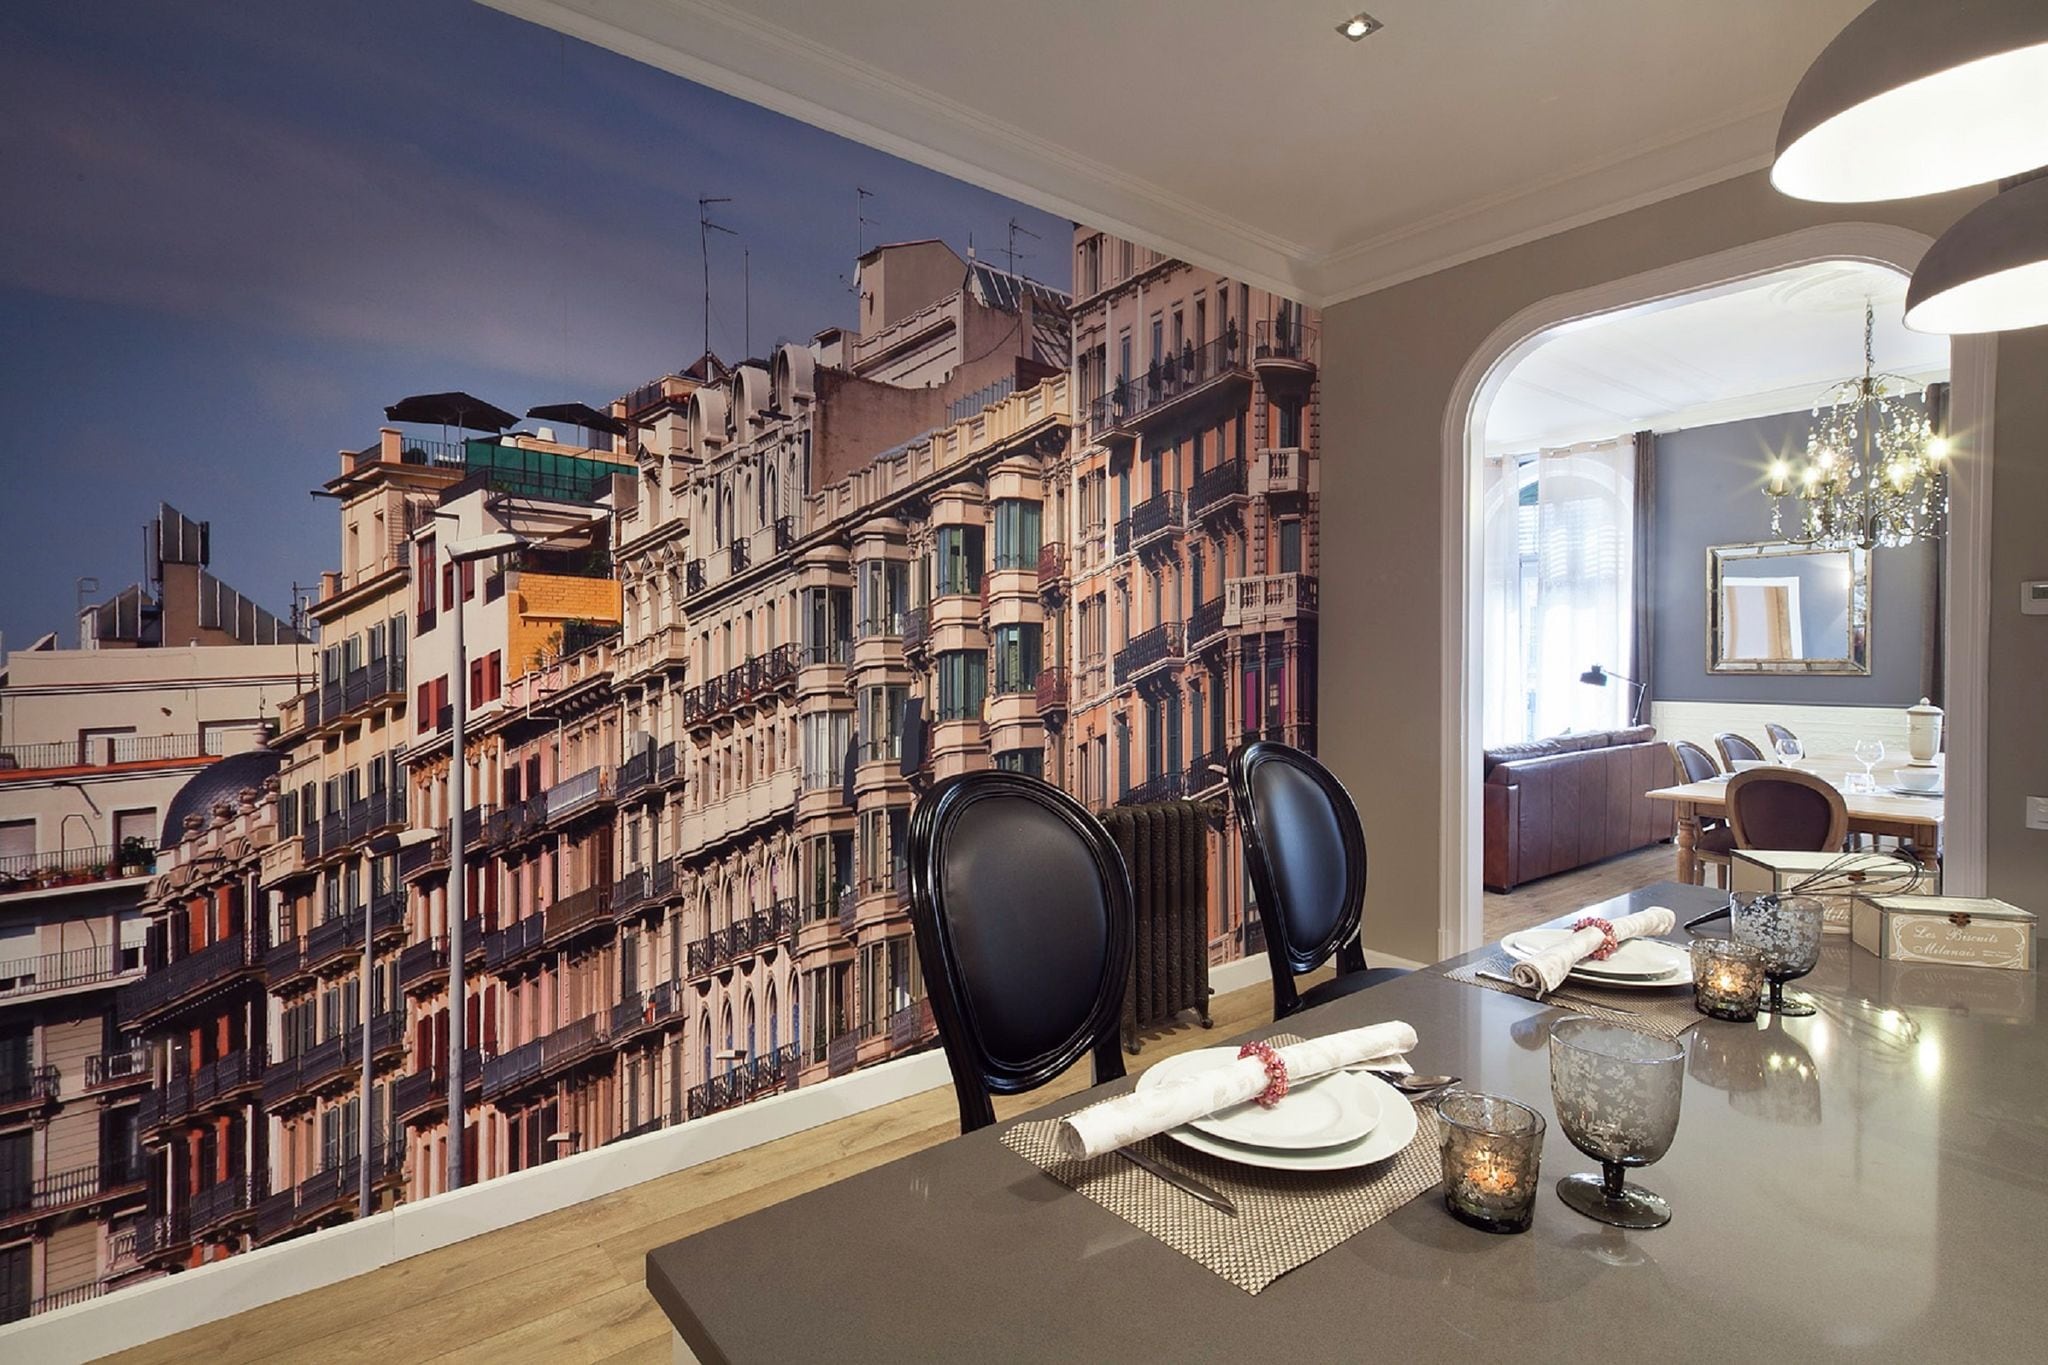 Exclusief appartement voor 4 personen in karakteristieke gebied van Barcelona